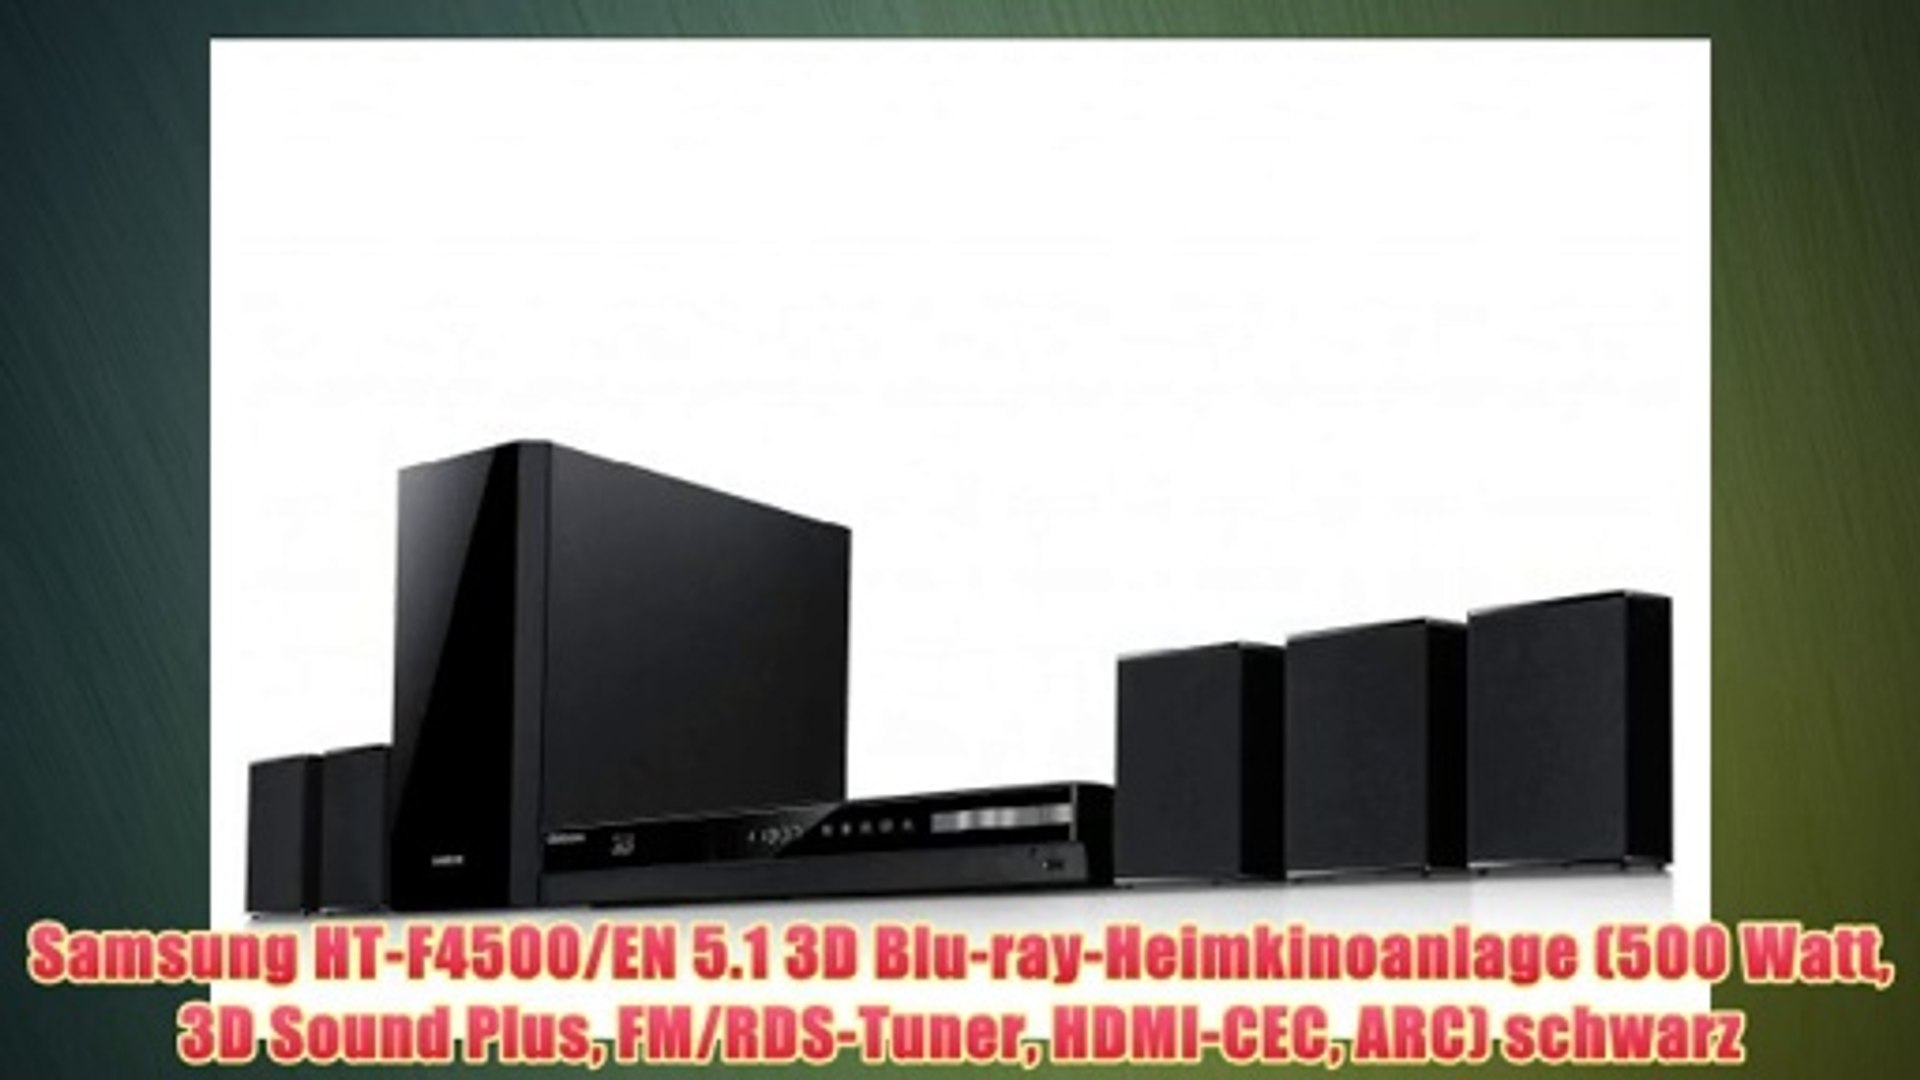 Samsung HT-F4500/EN 5.1 3D Blu-ray-Heimkinoanlage (500 Watt 3D Sound Plus  FM/RDS-Tuner HDMI-CEC - video Dailymotion